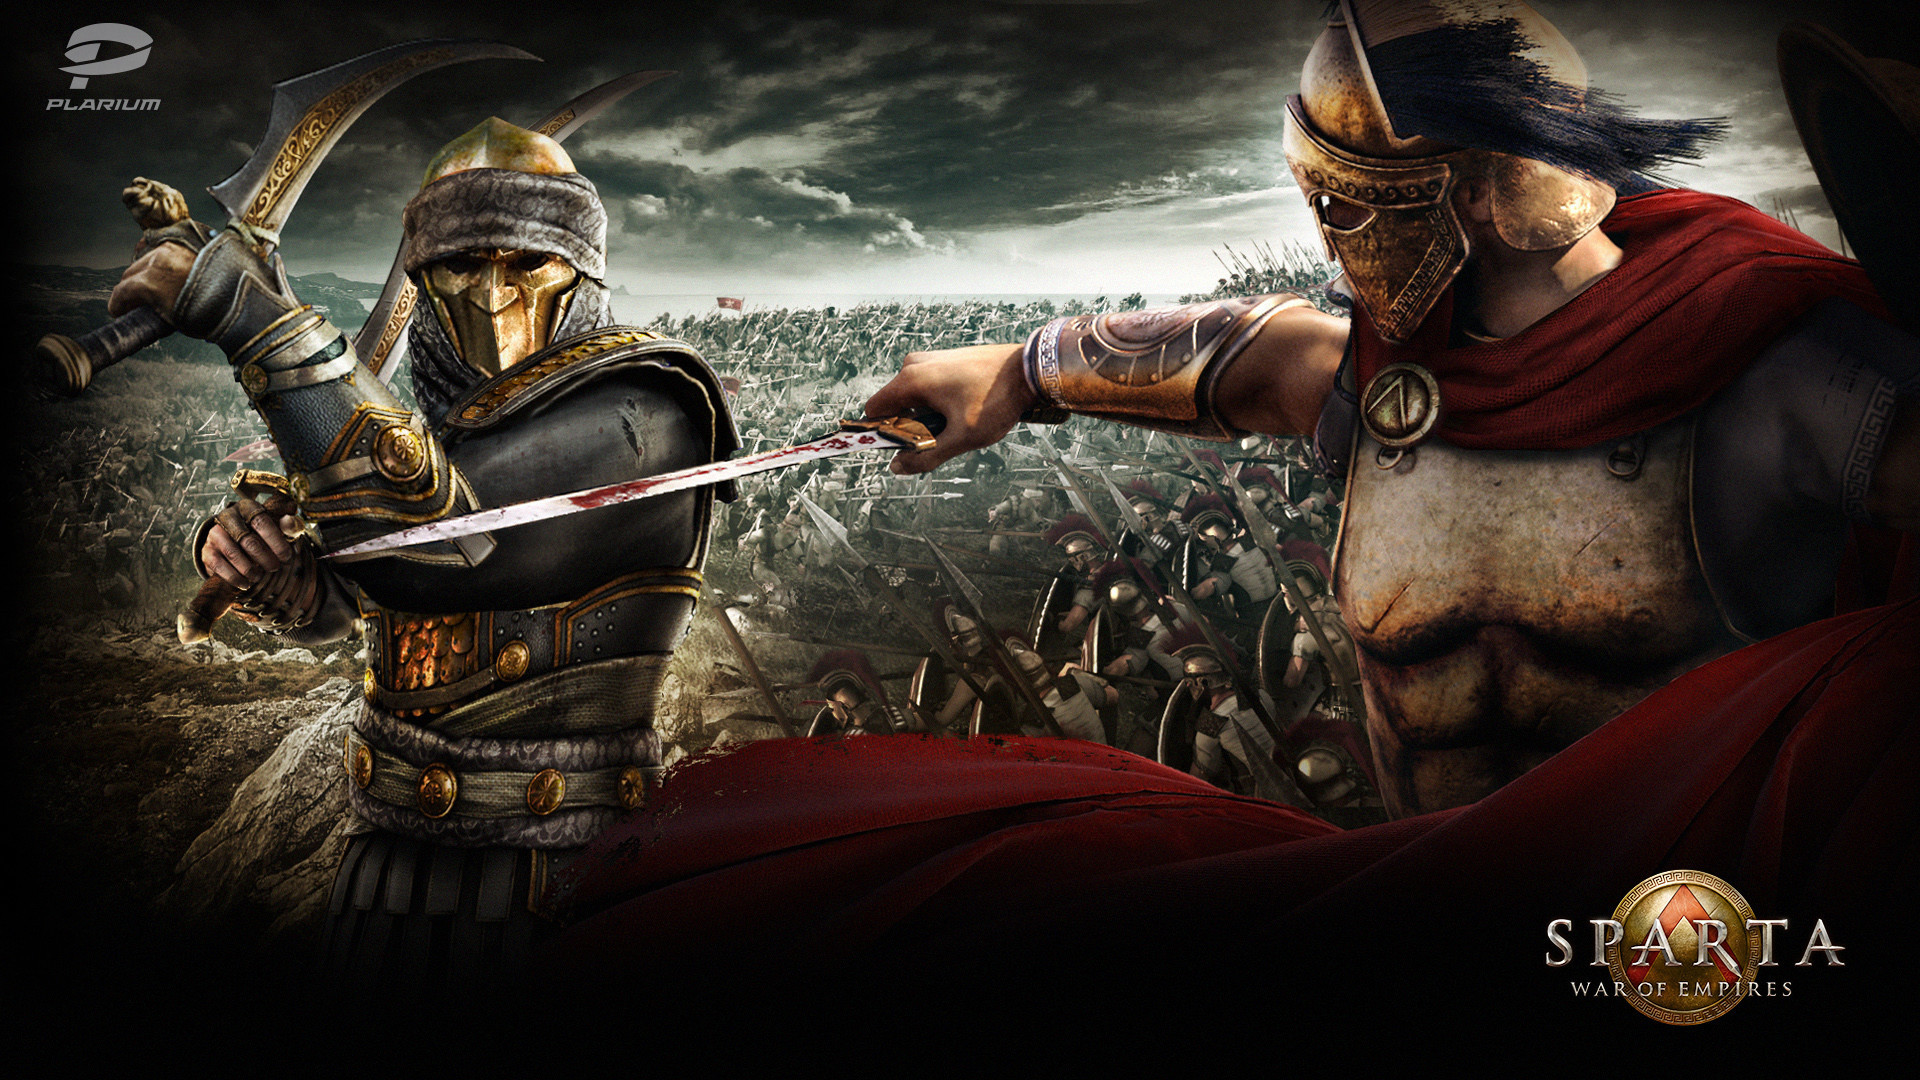 1920x1080 Sparta: War of Empires wallpaper 6 .